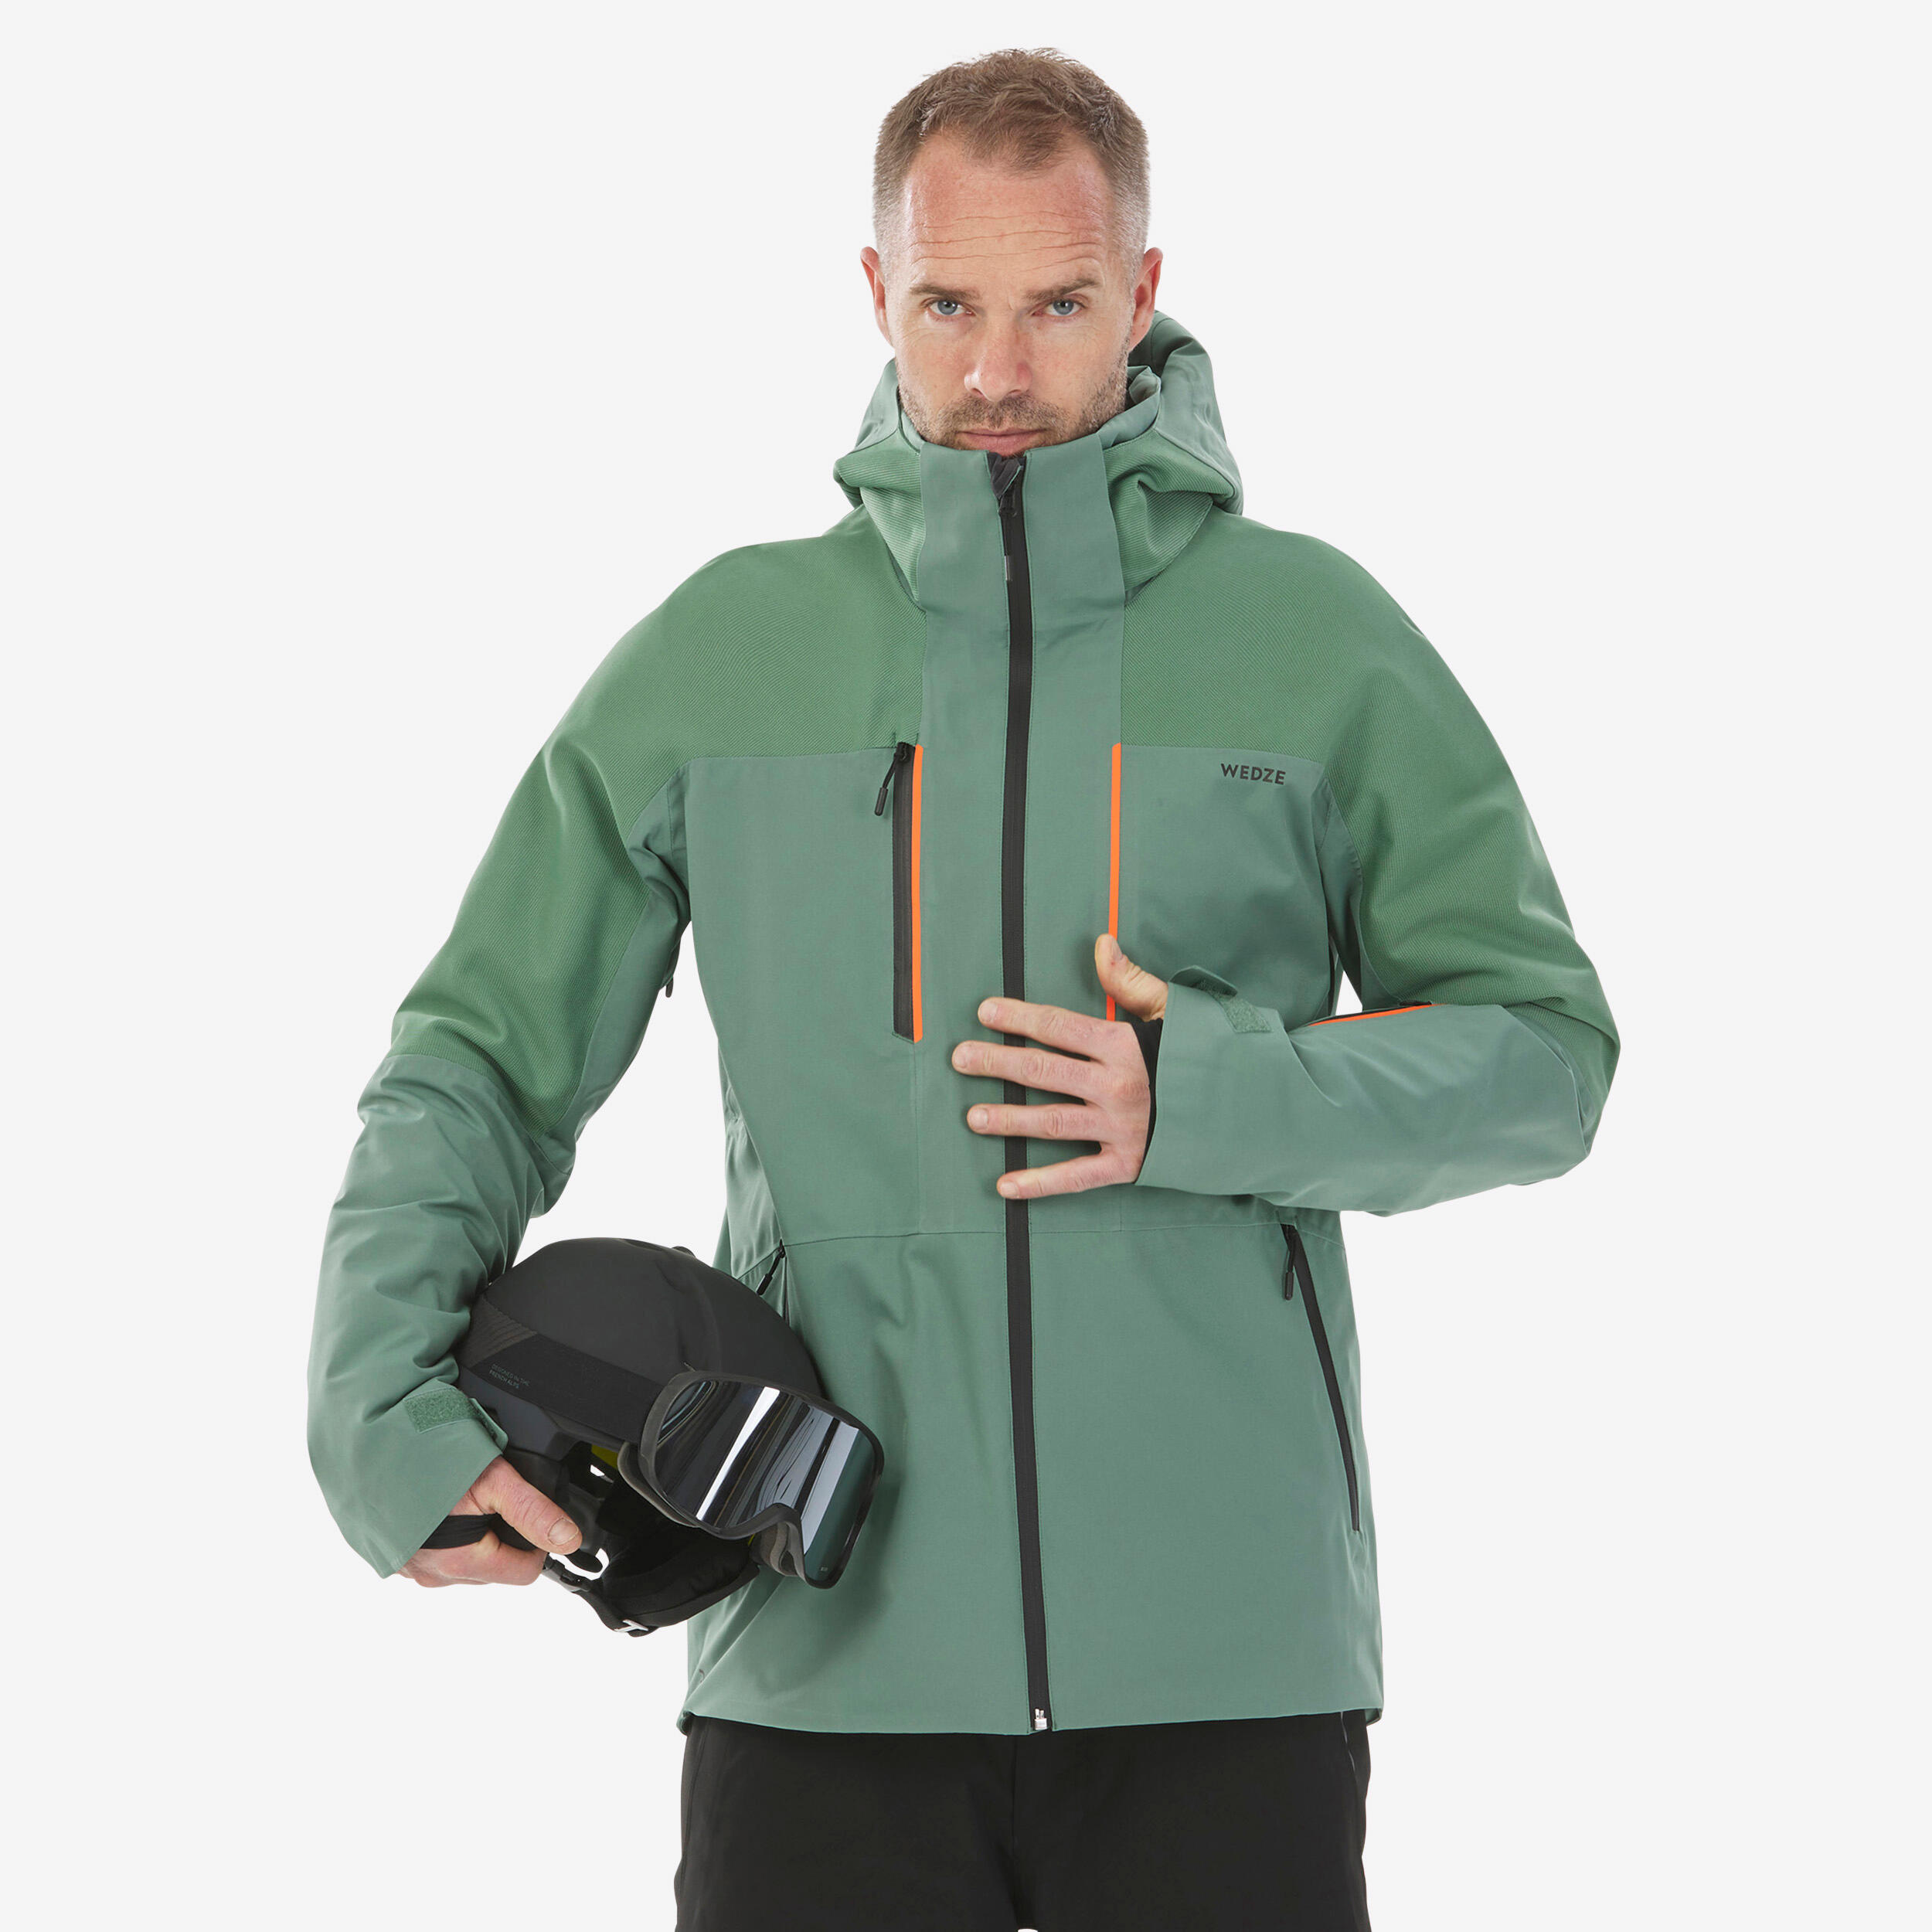 WEDZE Men’s Ski Jacket - 500 SPORT - Green